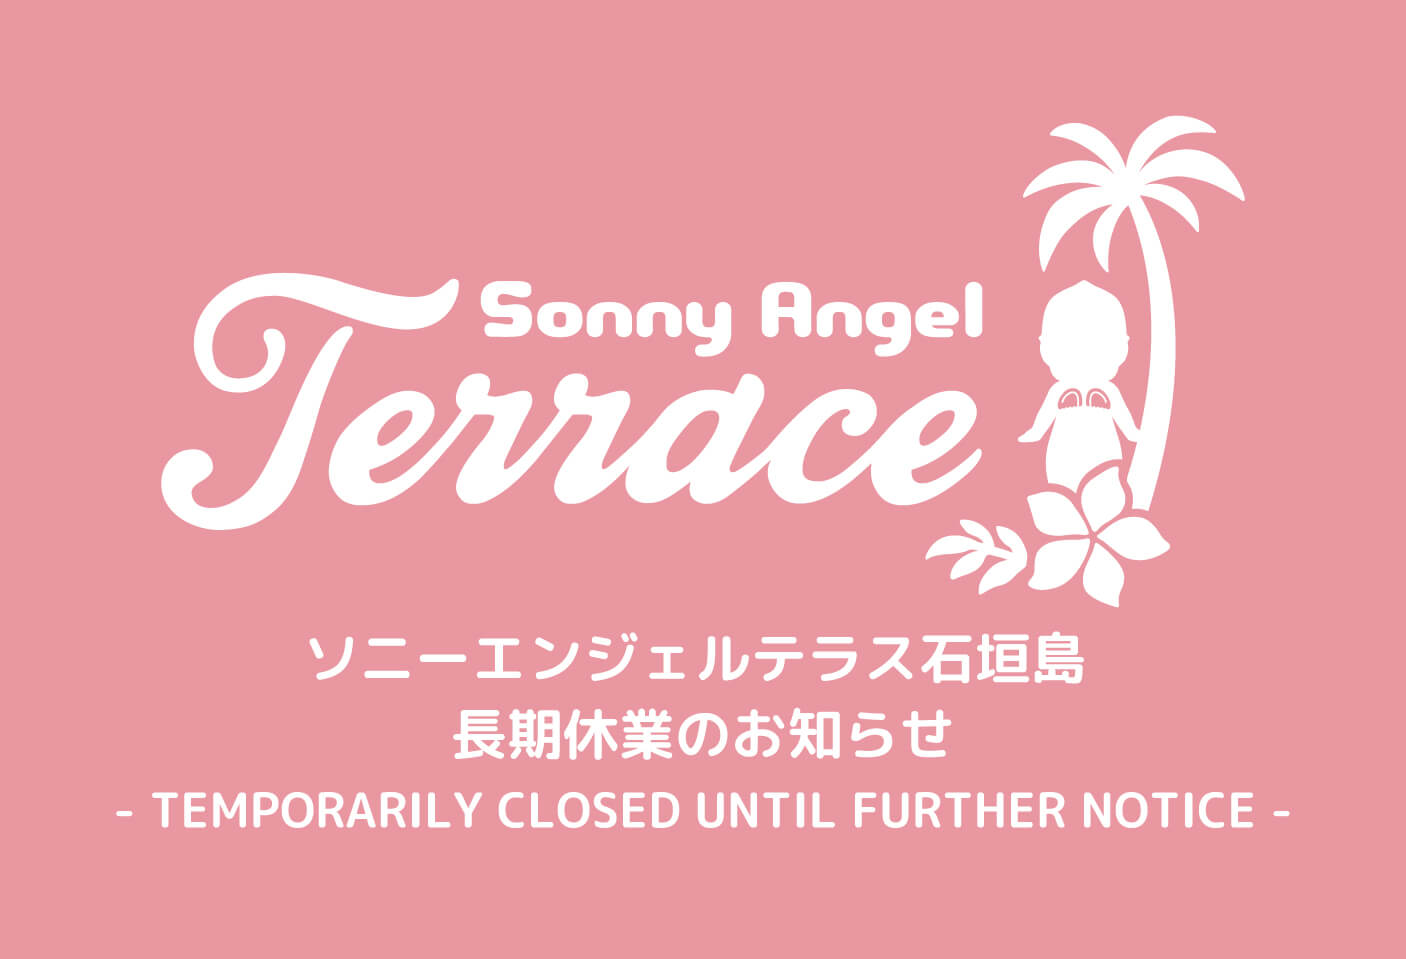 Sonny Angel Terrace 石垣島